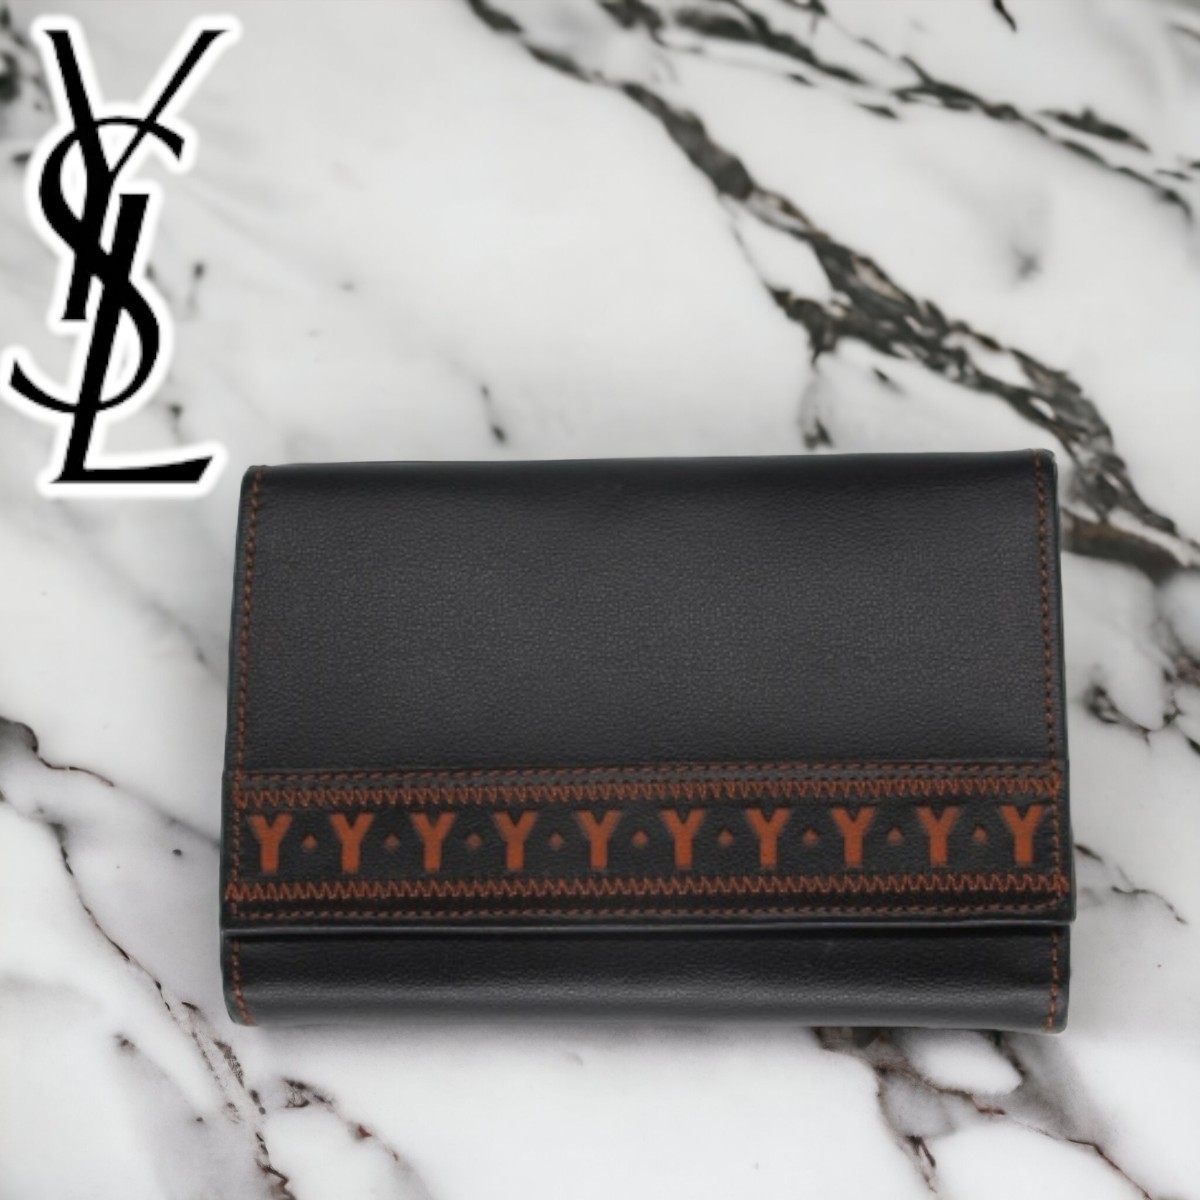 新品 Yves Saint Laurent サンローラン 三つ折り ガマ口 レザー 財布 ウォレット ブラック 黒 本革 Brandnew unused VINTAGE